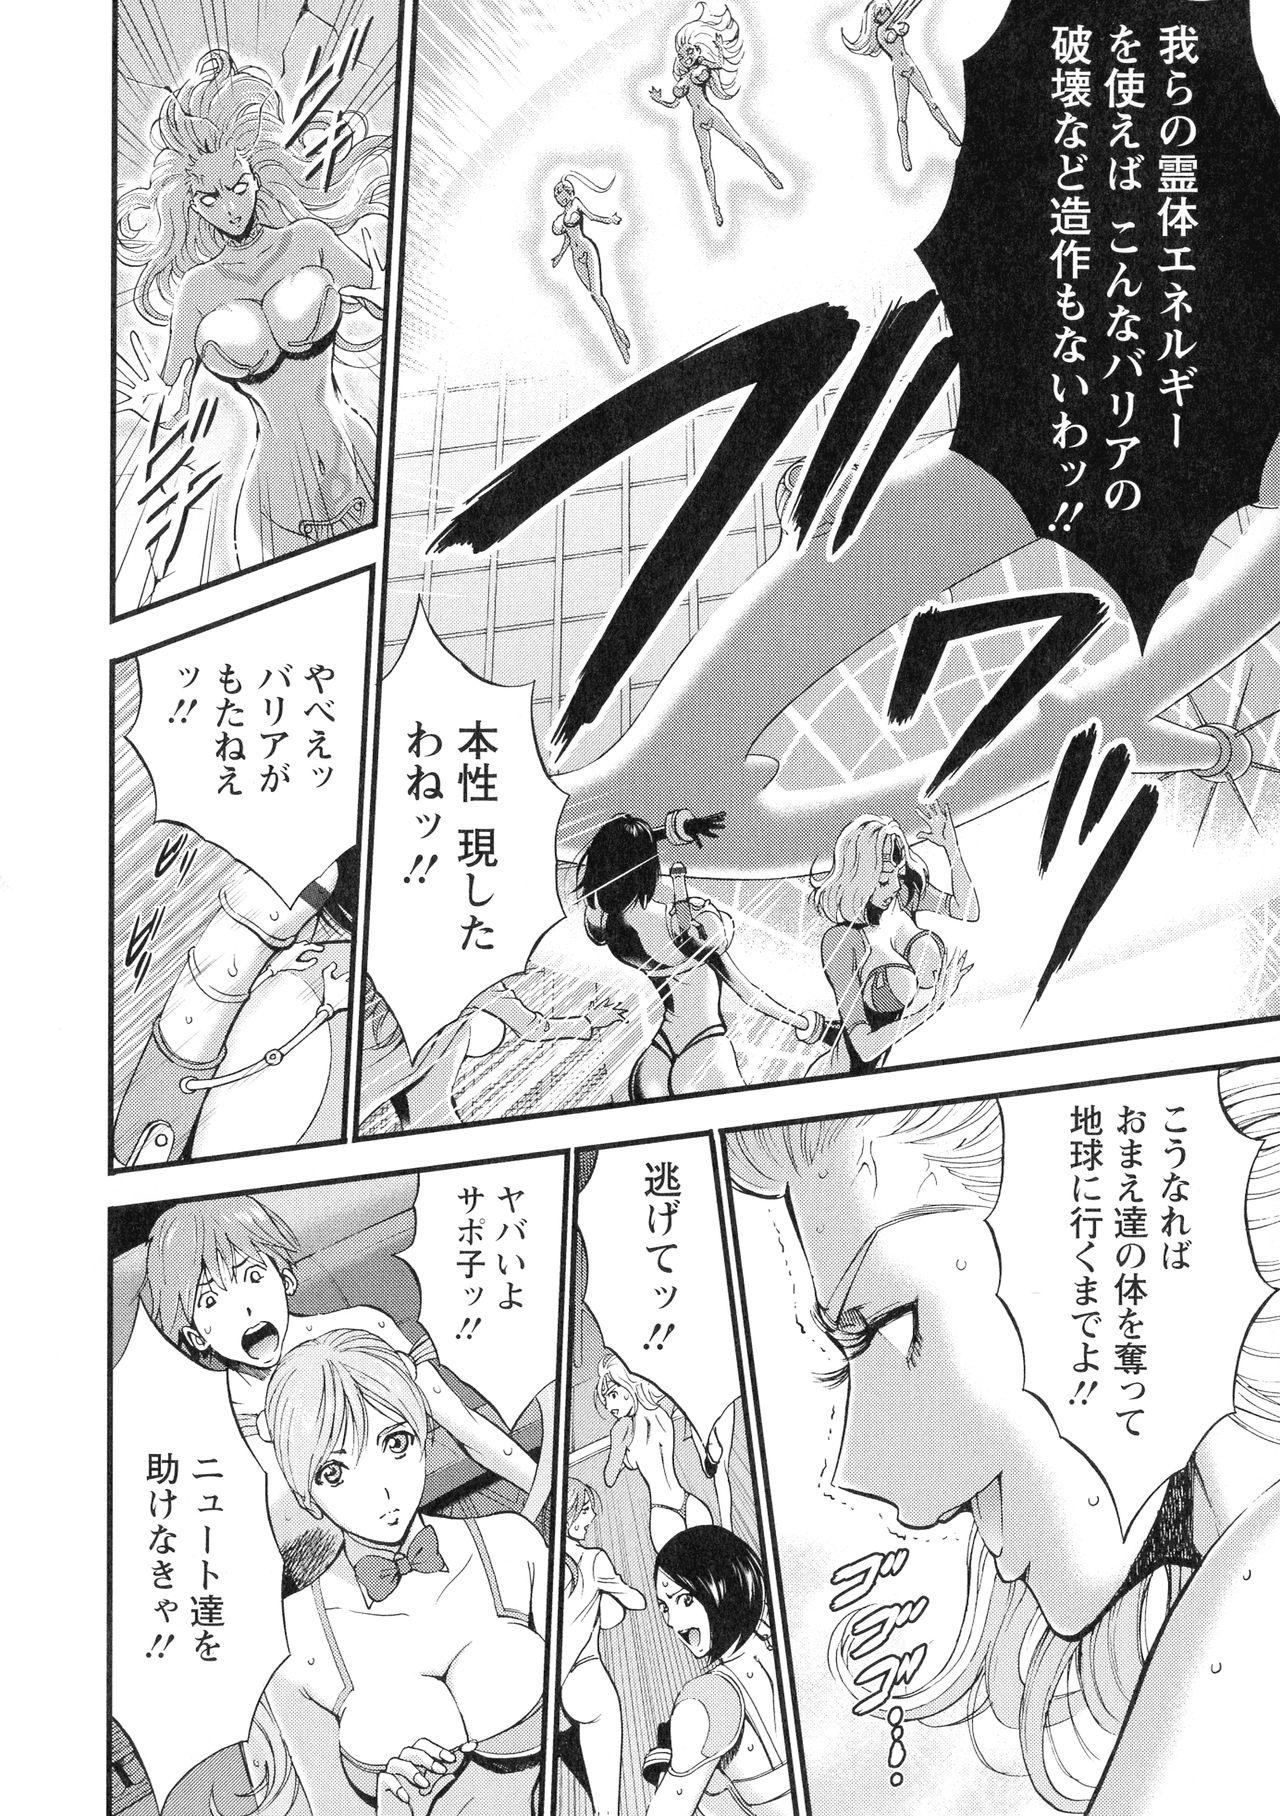 [Nakashima Chosuke] Seireki 2200-nen no Ota 3 Zetchou Time-Slip Girl 160